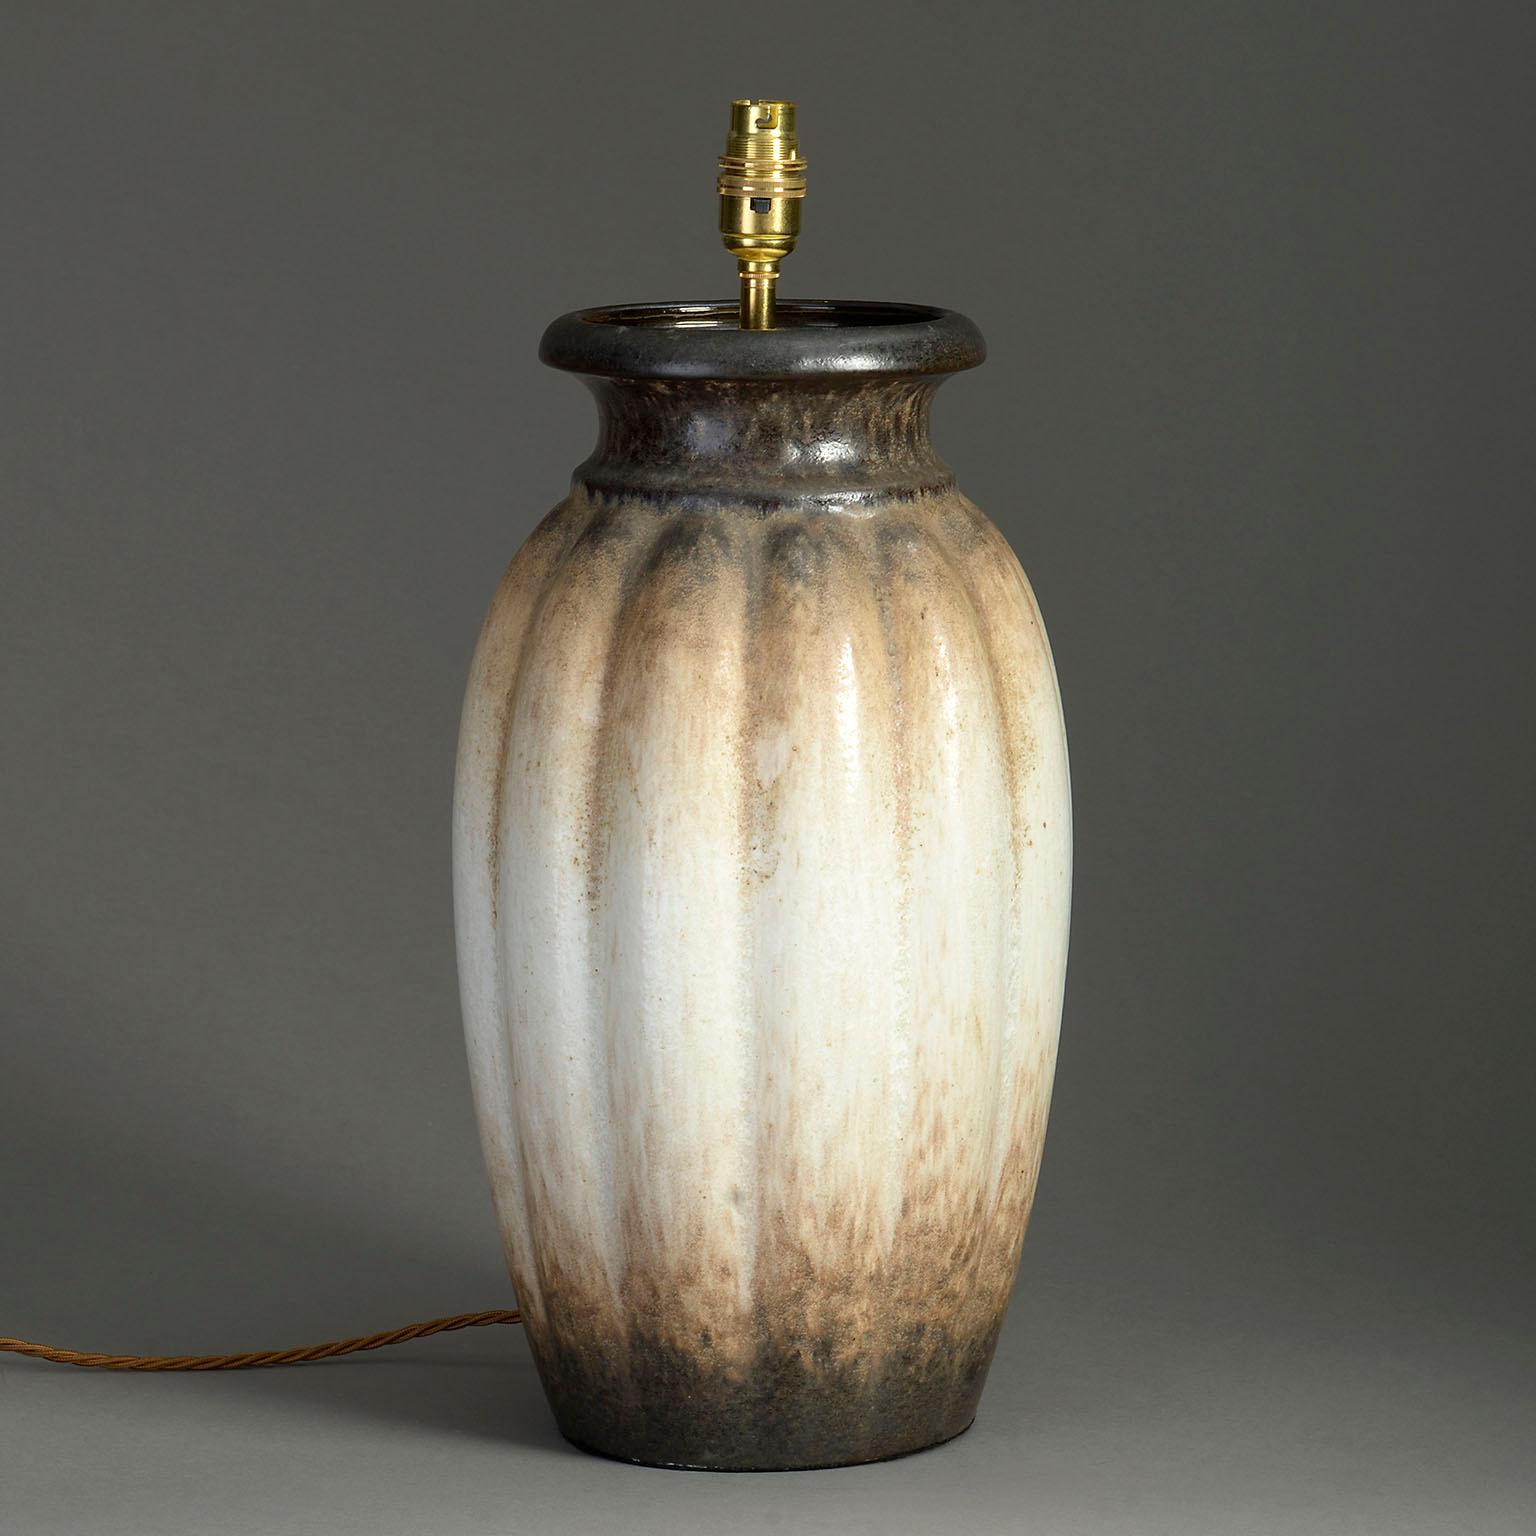 Un grand vase d'art en poterie, le corps de forme généreusement nervurée, avec une glaçure cappuccino tachetée sur toute la surface.

Maintenant monté comme une lampe

Les dimensions se réfèrent au vase.

L'abat-jour n'est pas inclus.